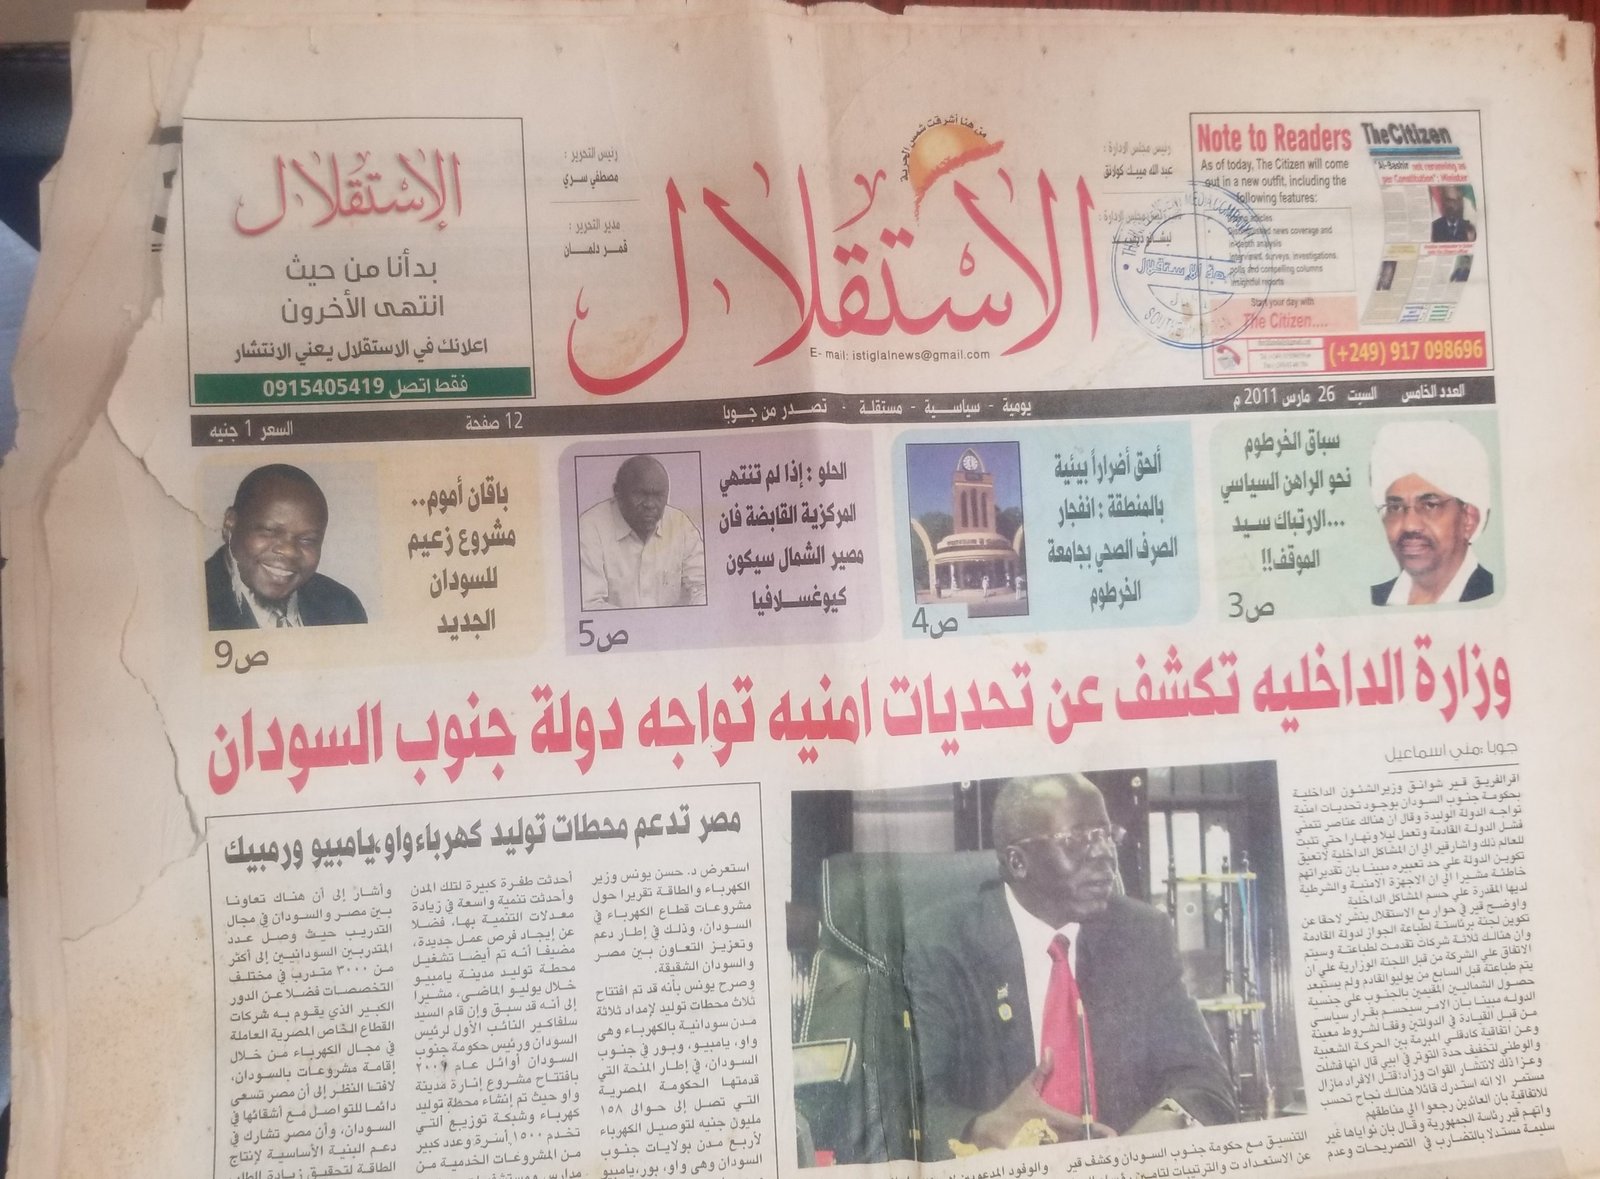 صحيفة الإستقلال وتجربة الصحافة ما بعد الإستقلال جنوب السودان 1 3 واجوما نيوز